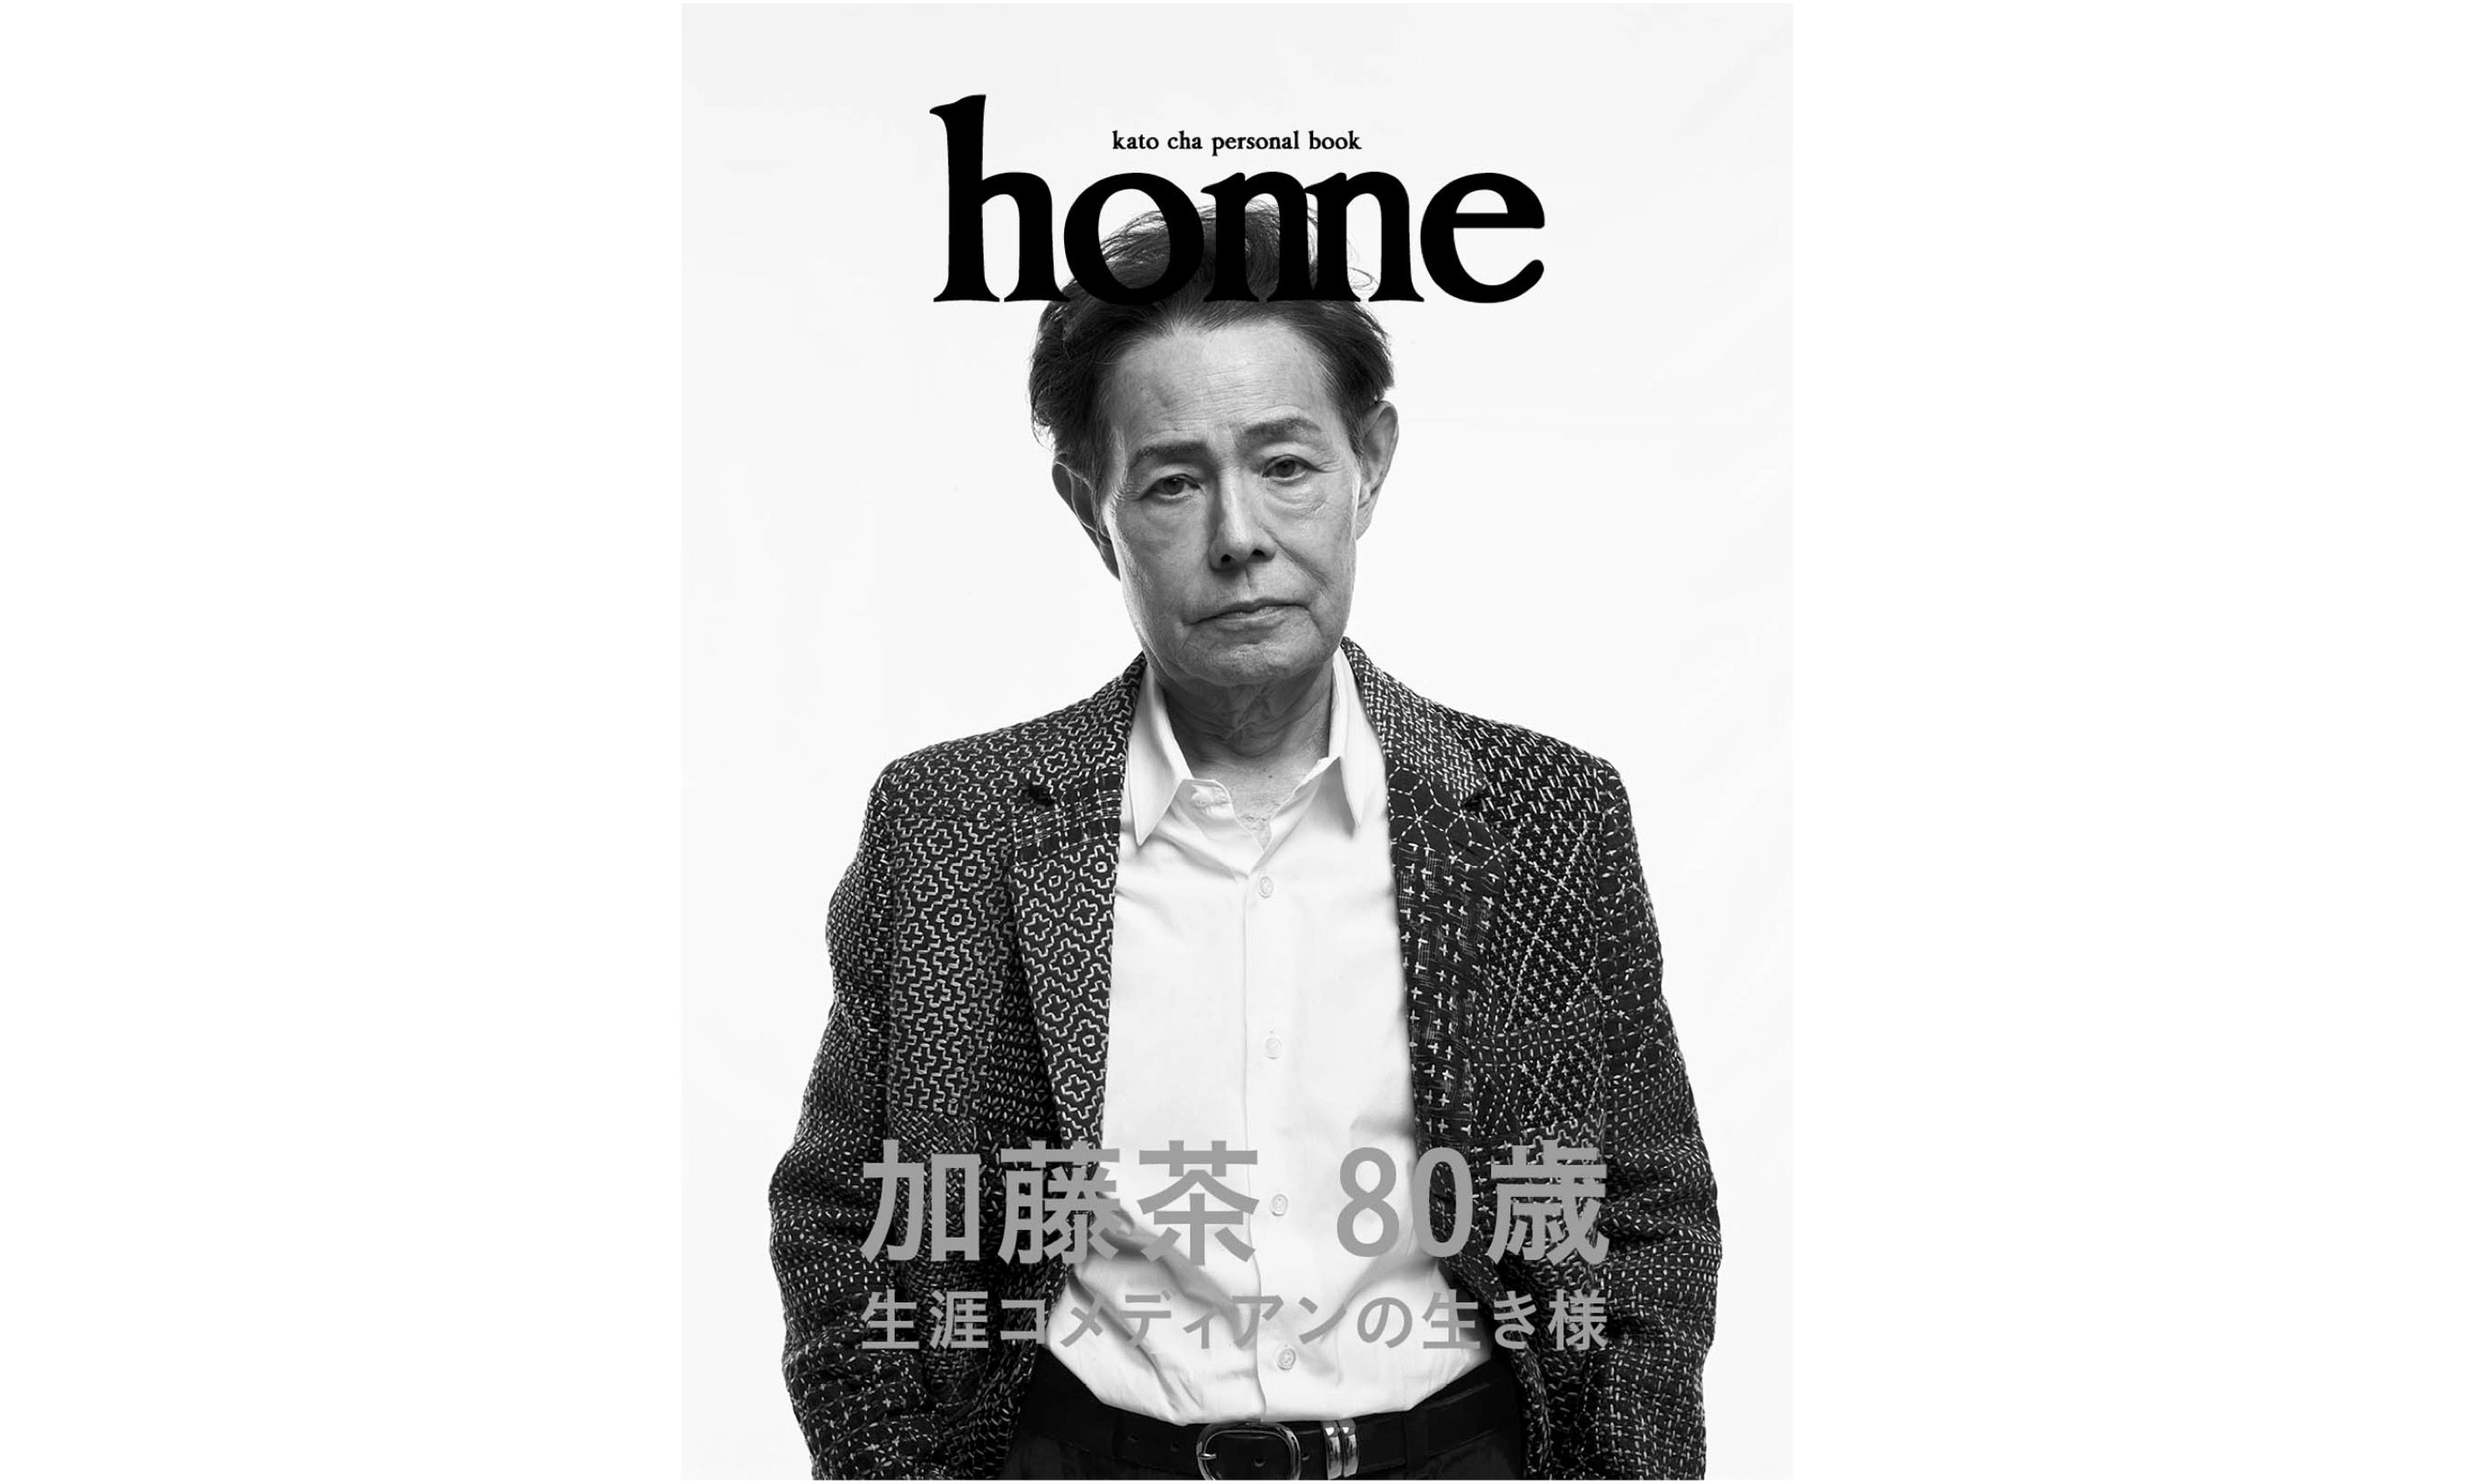 80歳を迎えた加藤茶による人生初のパーソナルブック 『home』発売